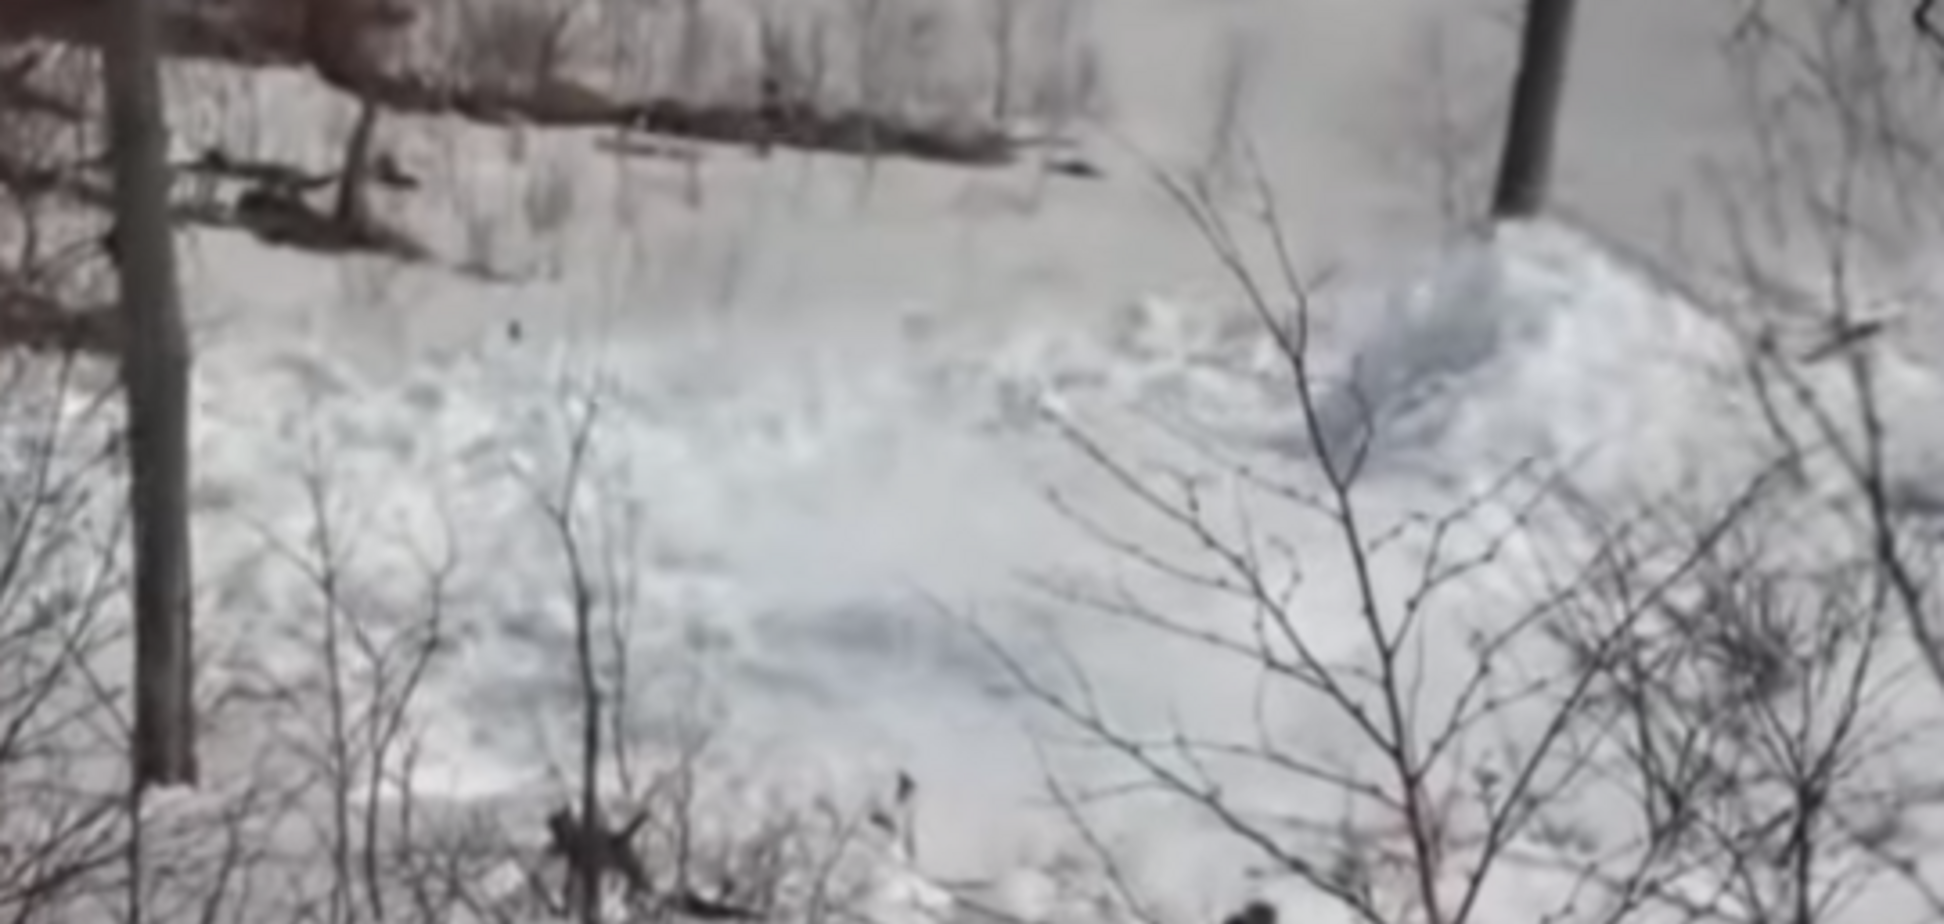  Снег 'взорвался': уникальное явление в России попало на видео